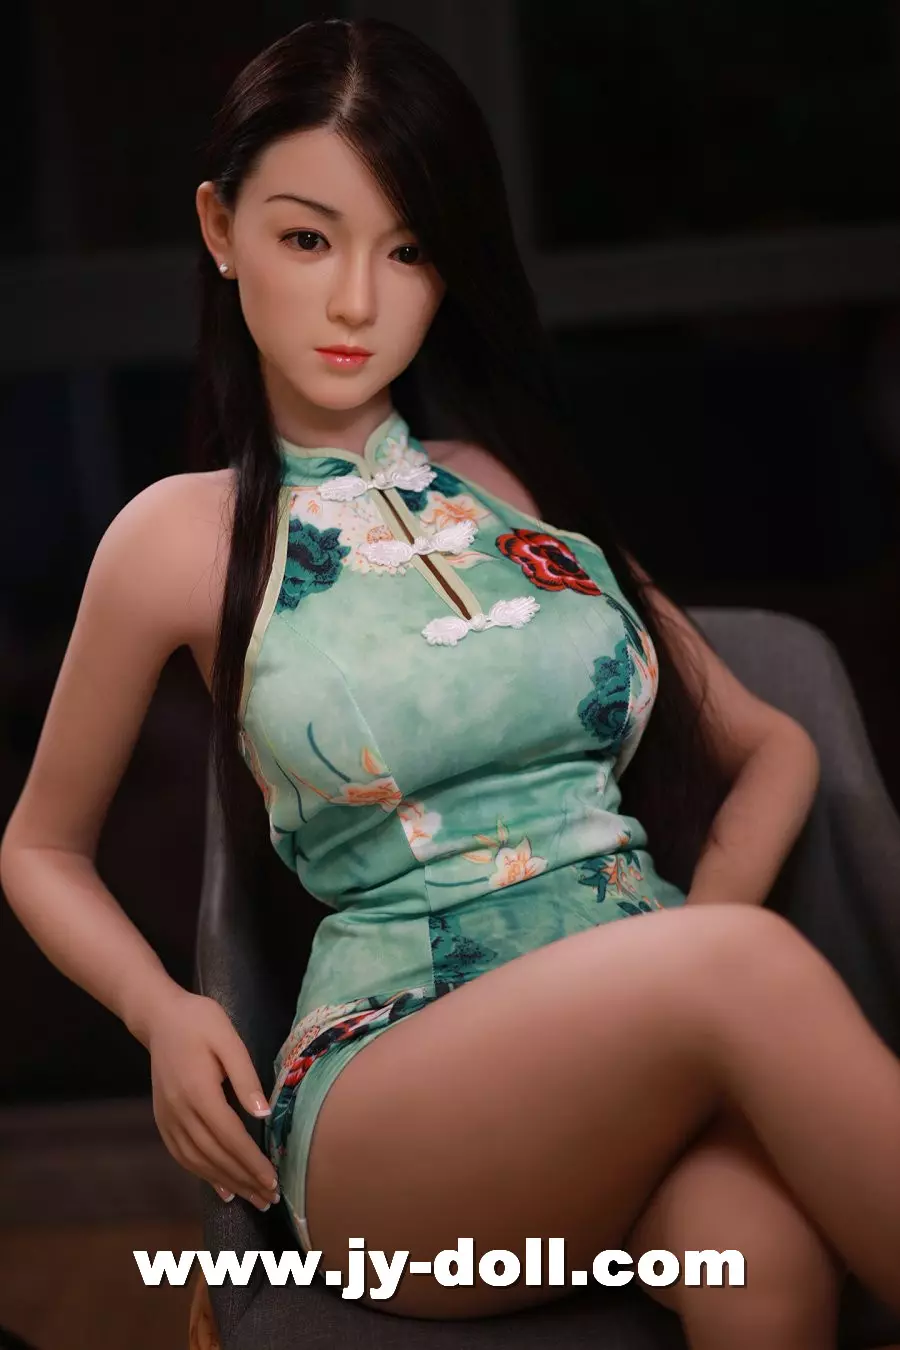 Japanese Sex Doll Girl - JYDOLL 157CM SEX DOLL Suzy 157cm big breasts | japanese porn sex | JY dolls  [JYDOLL 157CM SEX DOLL Suzy] - $2,050.00 : JY Doll